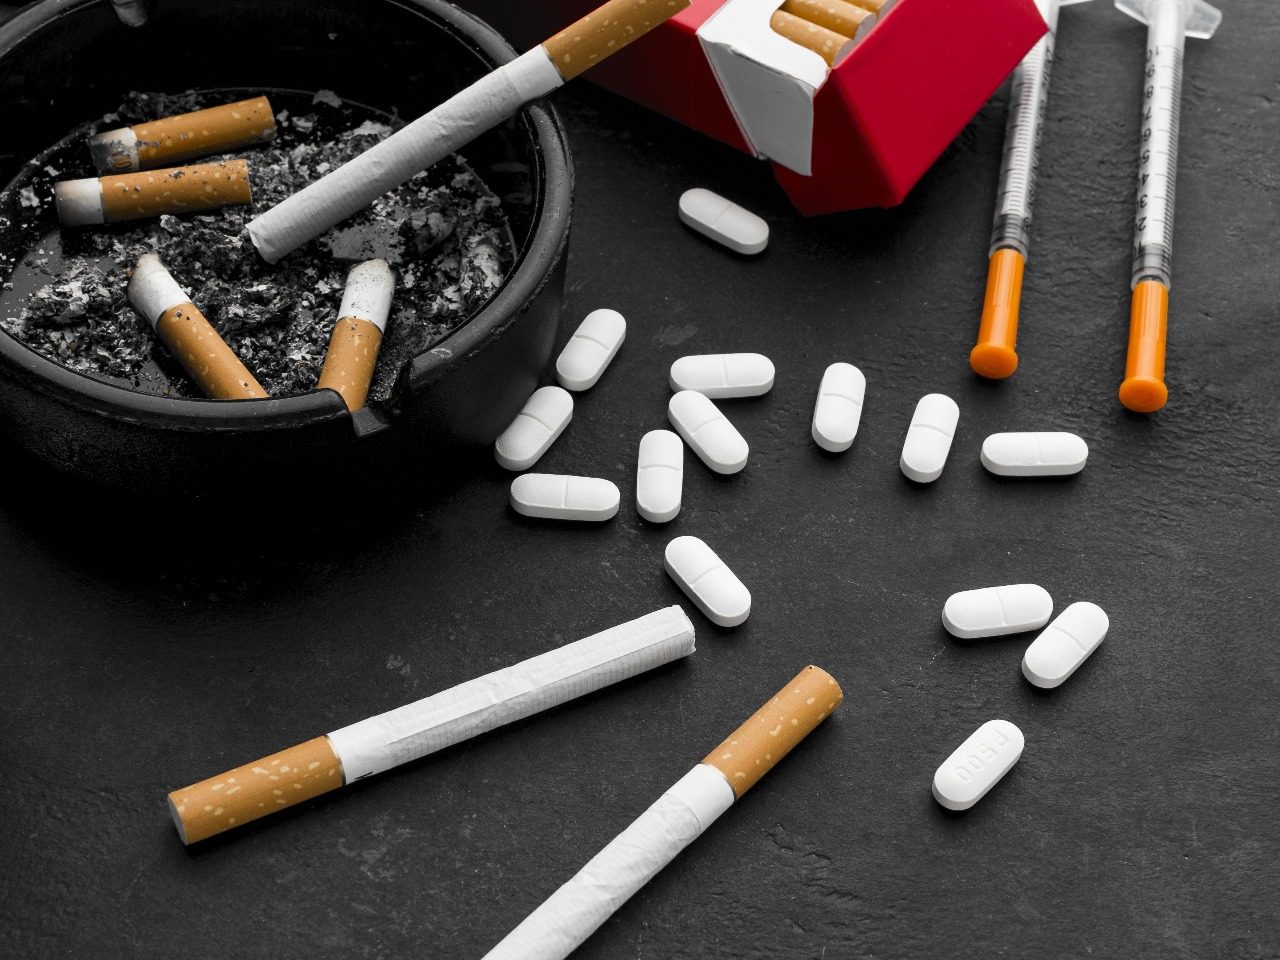 Présentation de produits addictifs posés sur une table , cigarettes, médicaments, seringues